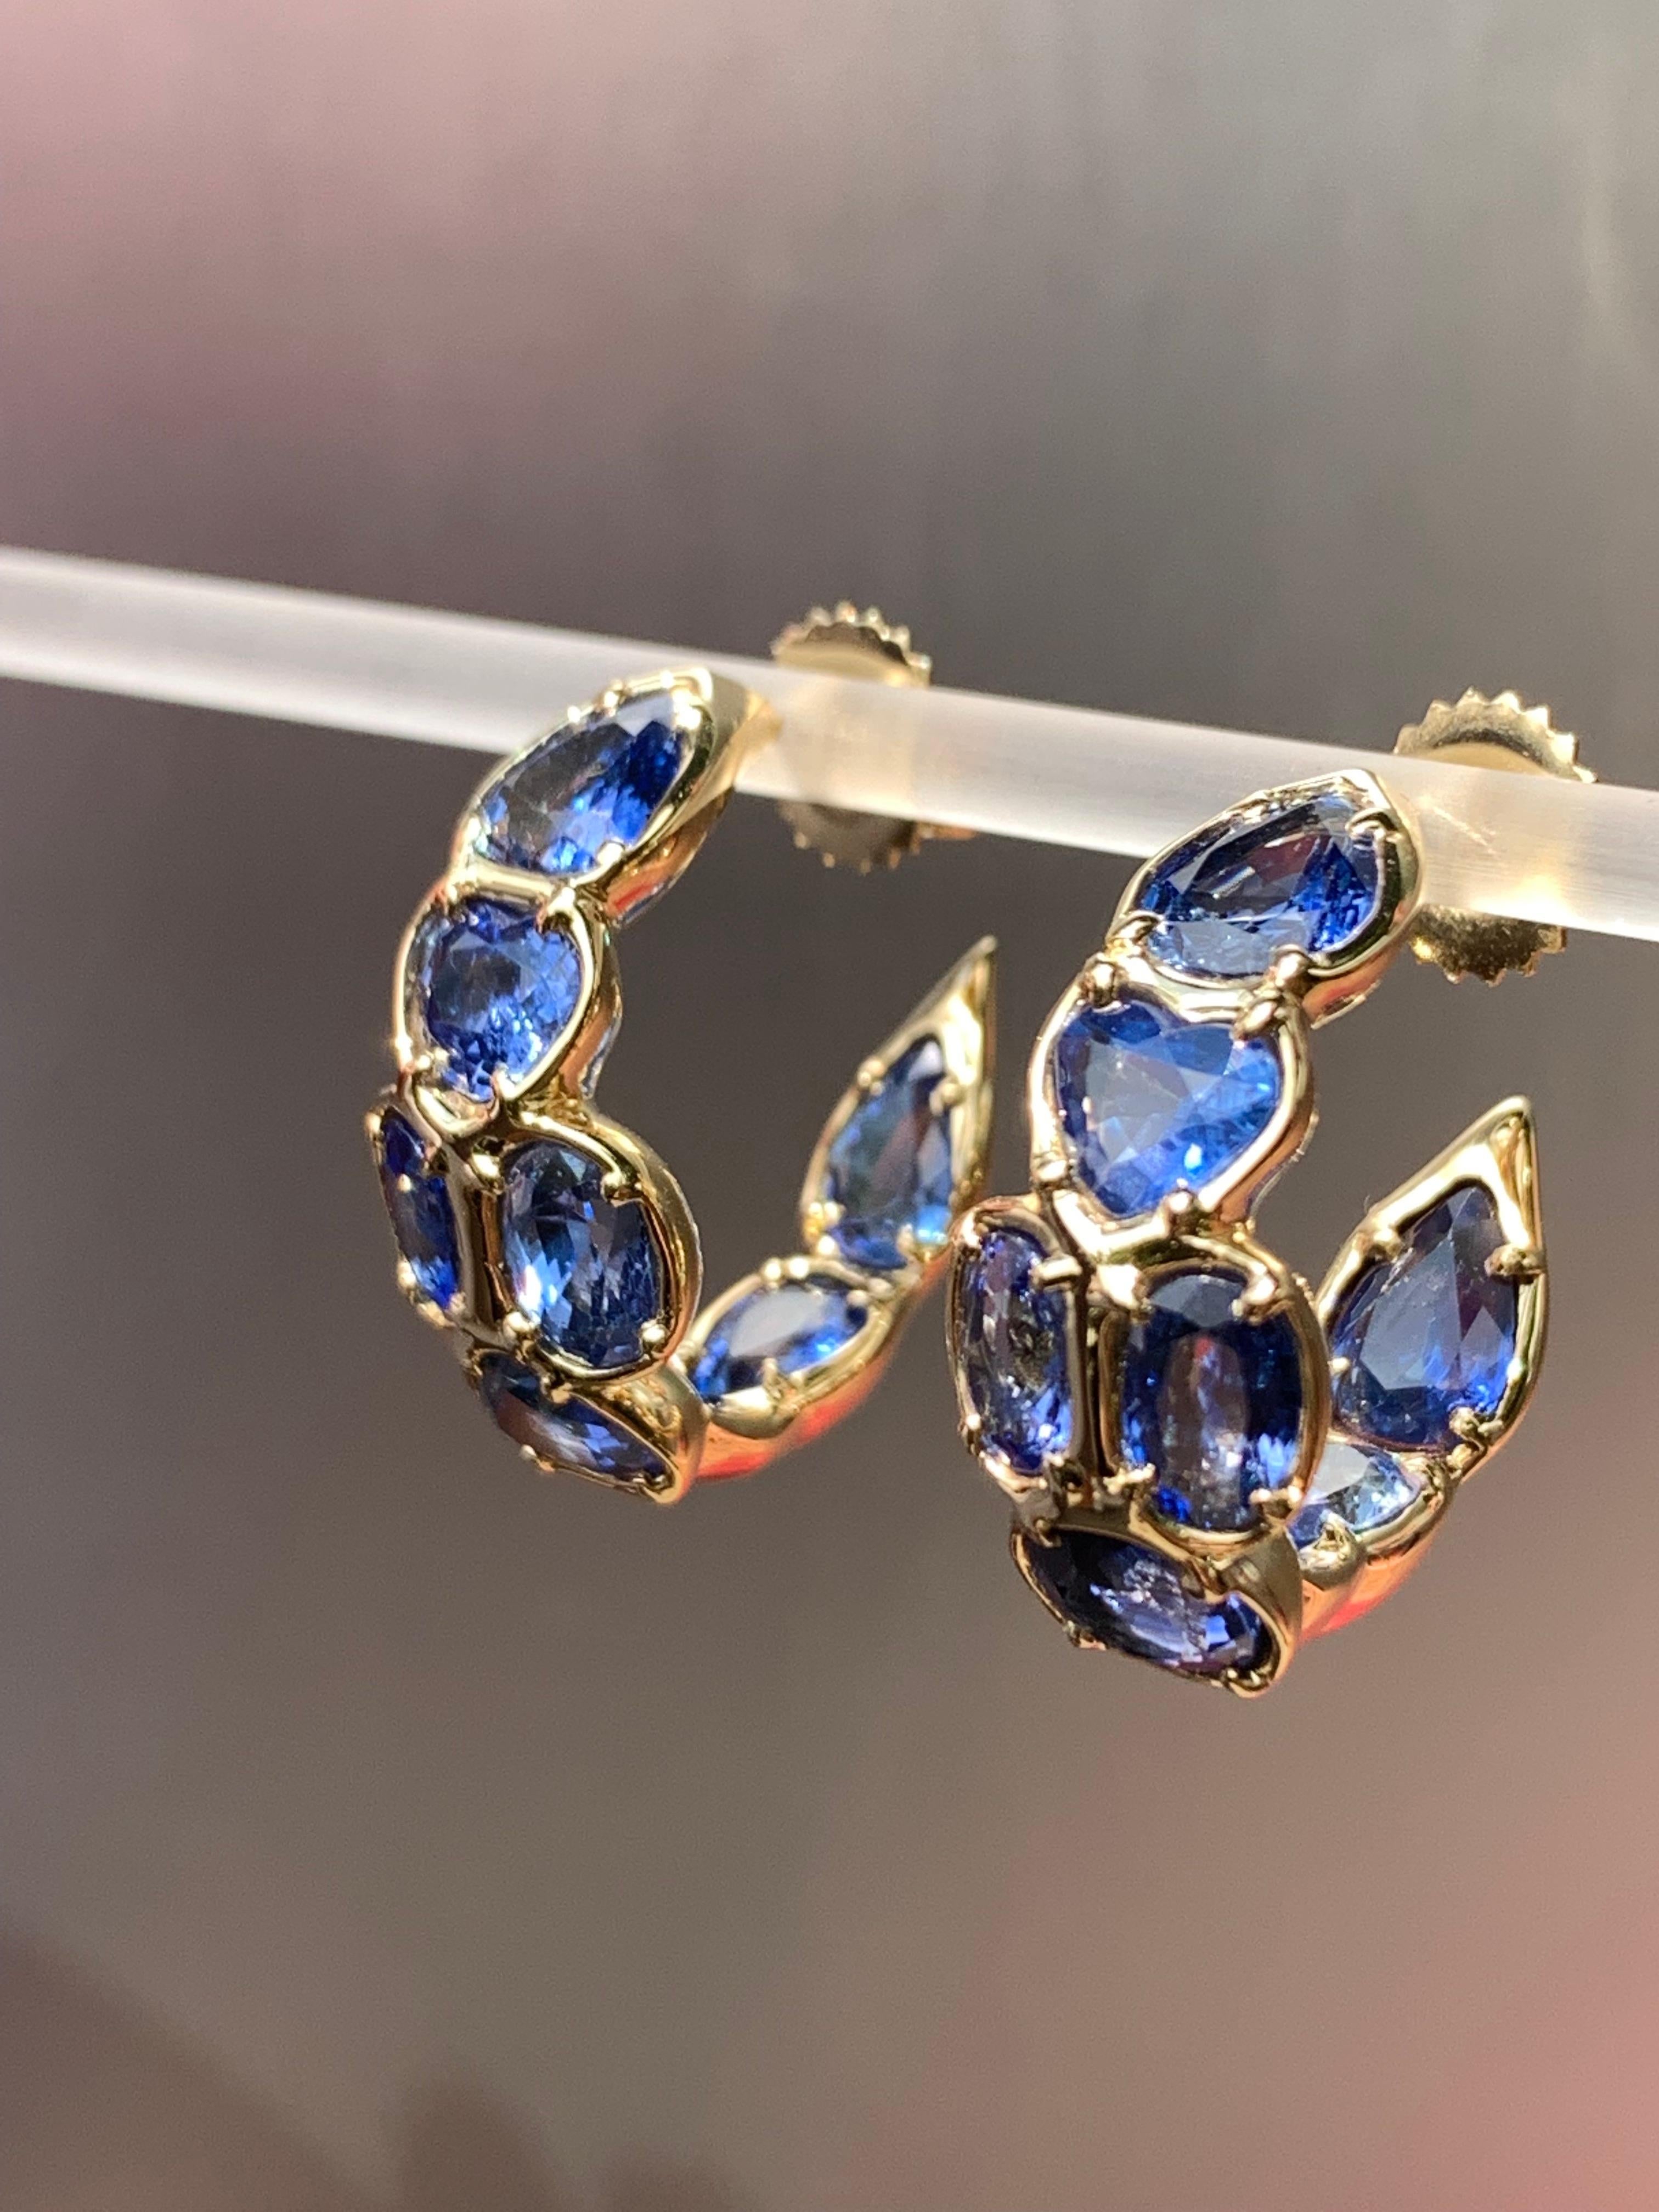 Dieser atemberaubende blaue Saphir-Ohrring ist ein Traum für Liebhaber des blauen Saphirs! Er ist klein genug, um unauffällig zu sein, aber die Farbe strahlt, egal wie er getragen wird. Dies ist ein einzigartiger Ohrring aus 18-karätigem Gelbgold